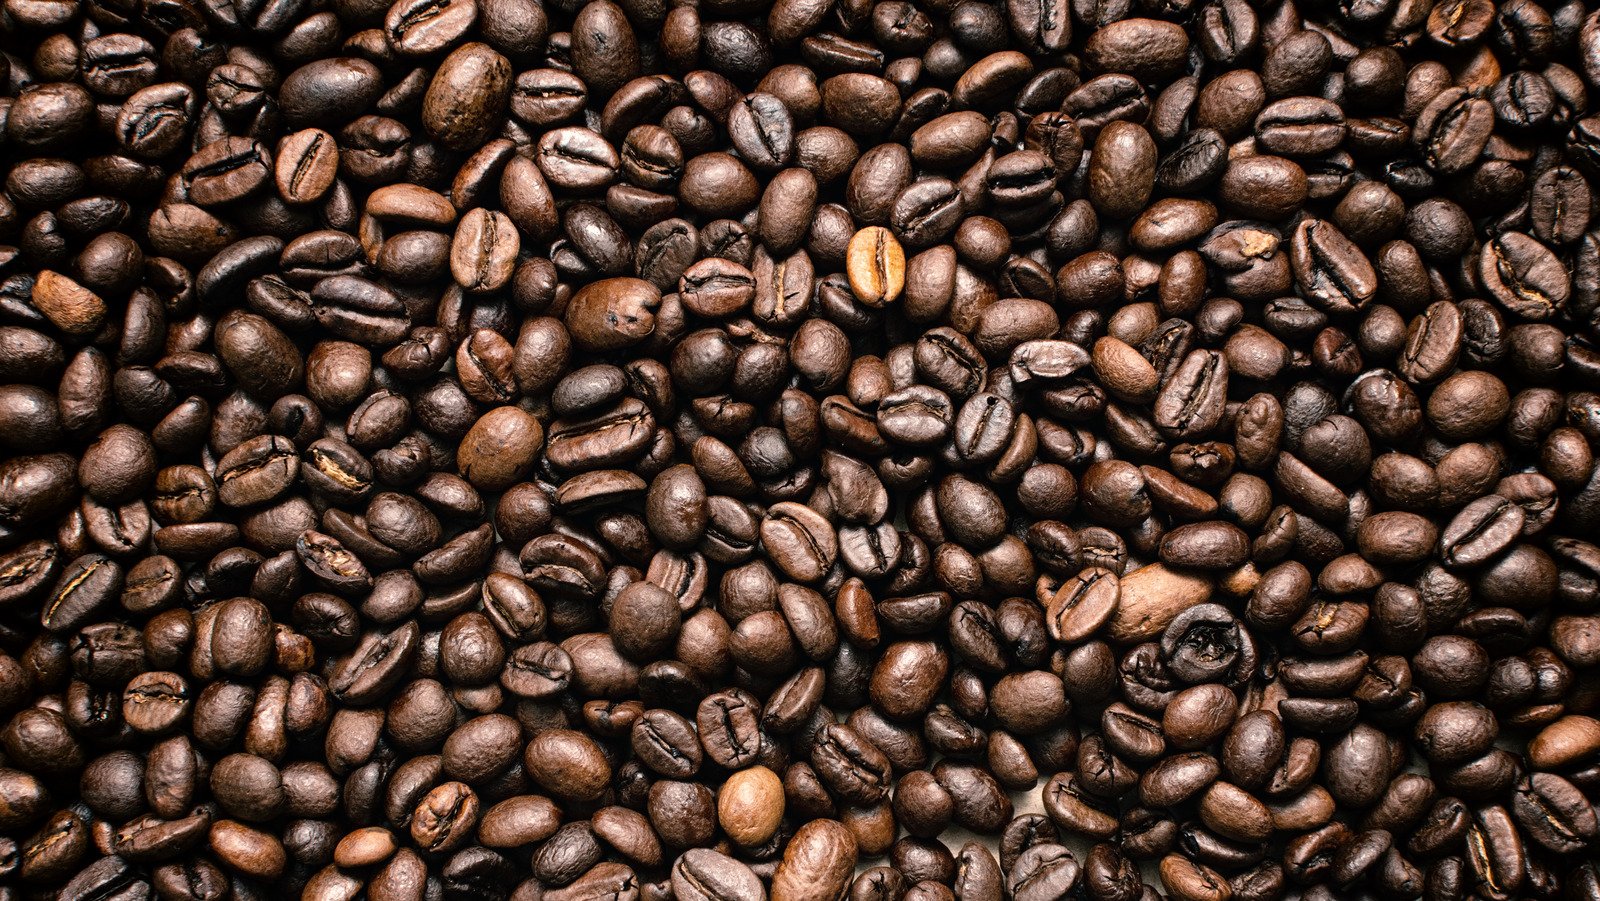 Do Bourbon Coffee Beans Contain Alcohol?